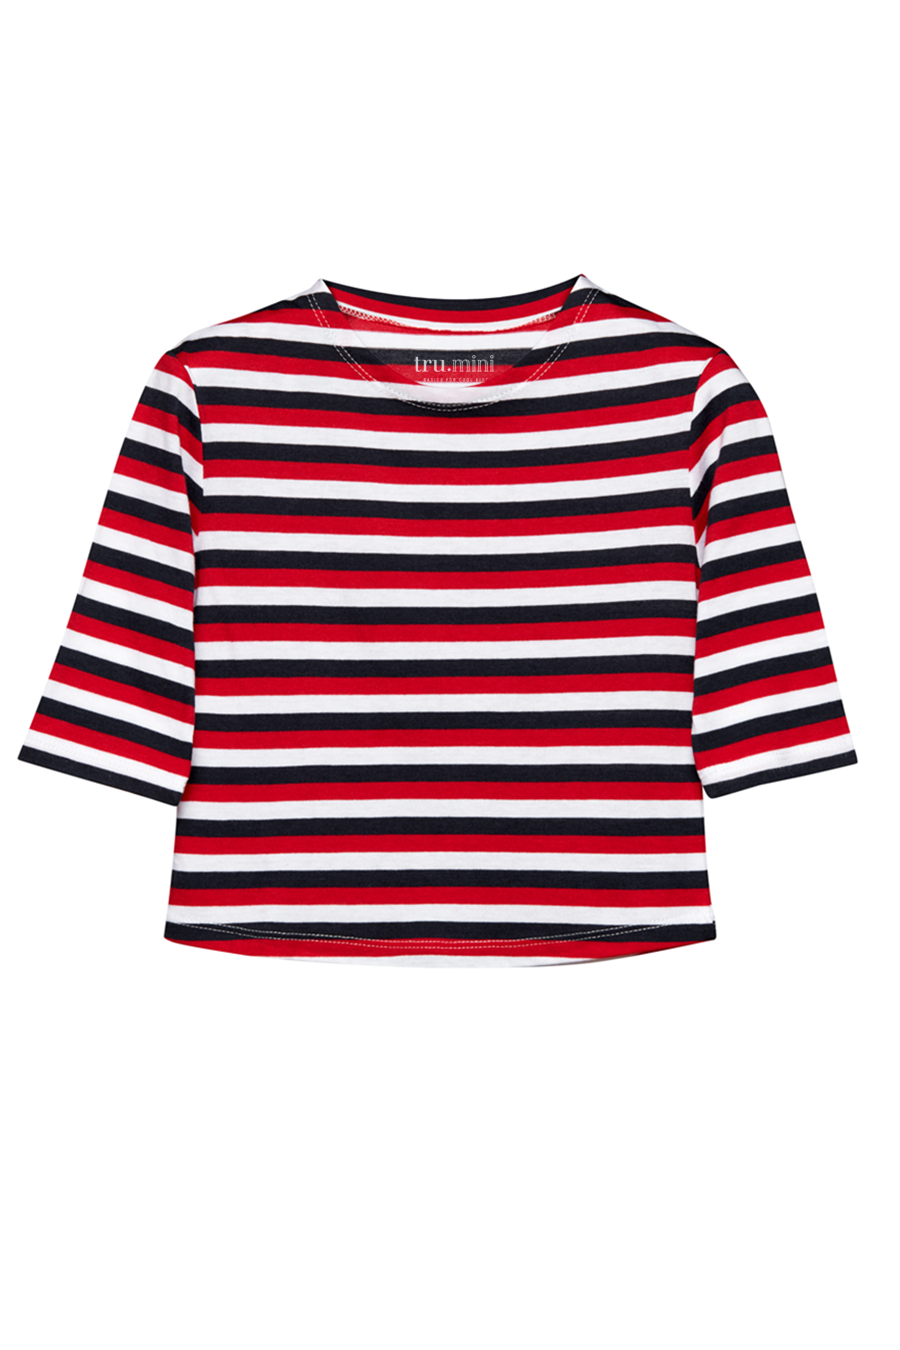 tru. Çocuk Kırmızı/Beyaz/Lacivert Çizgili Düşük Omuzlu Uzun Kollu Breton Çocuk T-shirt